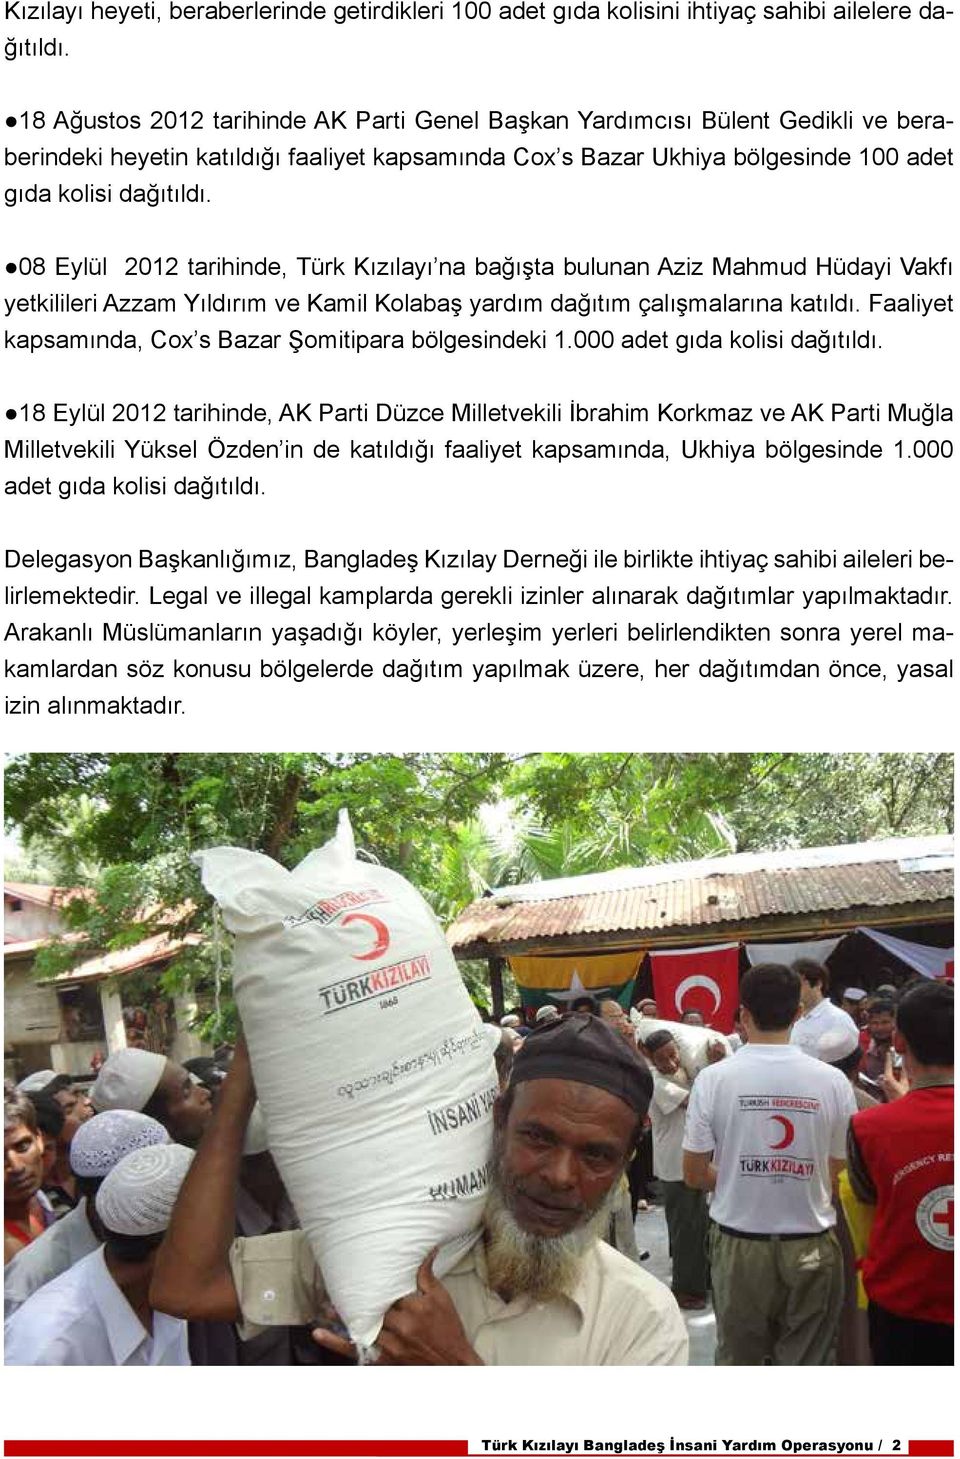 08 Eylül 2012 tarihinde, Türk Kızılayı na bağışta bulunan Aziz Mahmud Hüdayi Vakfı yetkilileri Azzam Yıldırım ve Kamil Kolabaş yardım dağıtım çalışmalarına katıldı.